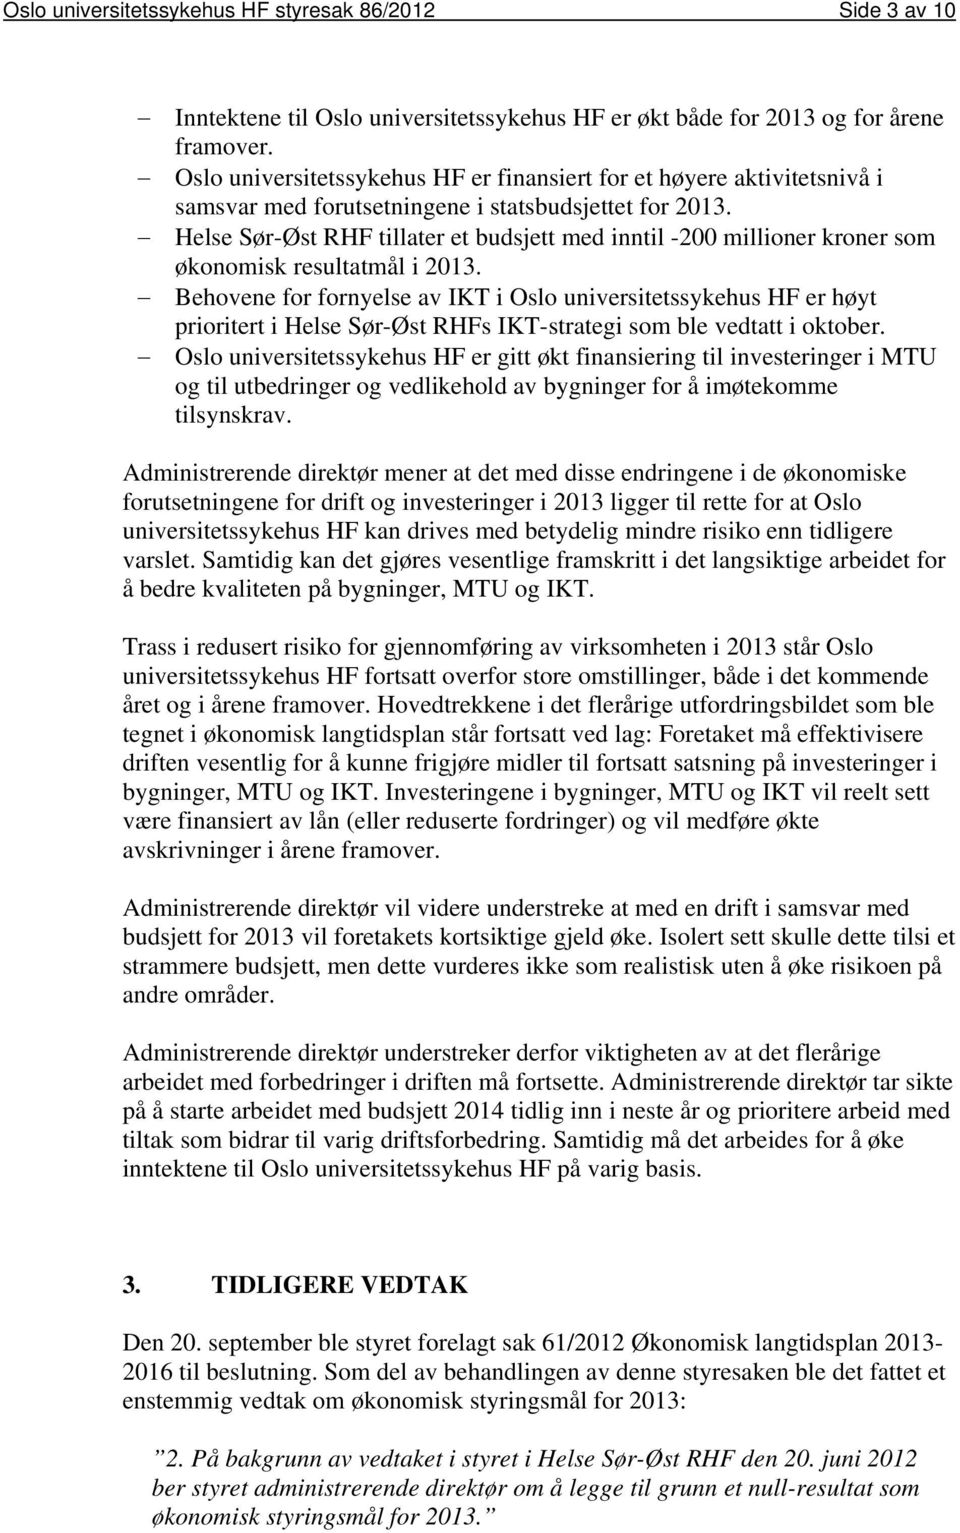 Helse Sør-Øst RHF tillater et budsjett med inntil -200 millioner kroner som økonomisk resultatmål i 2013.